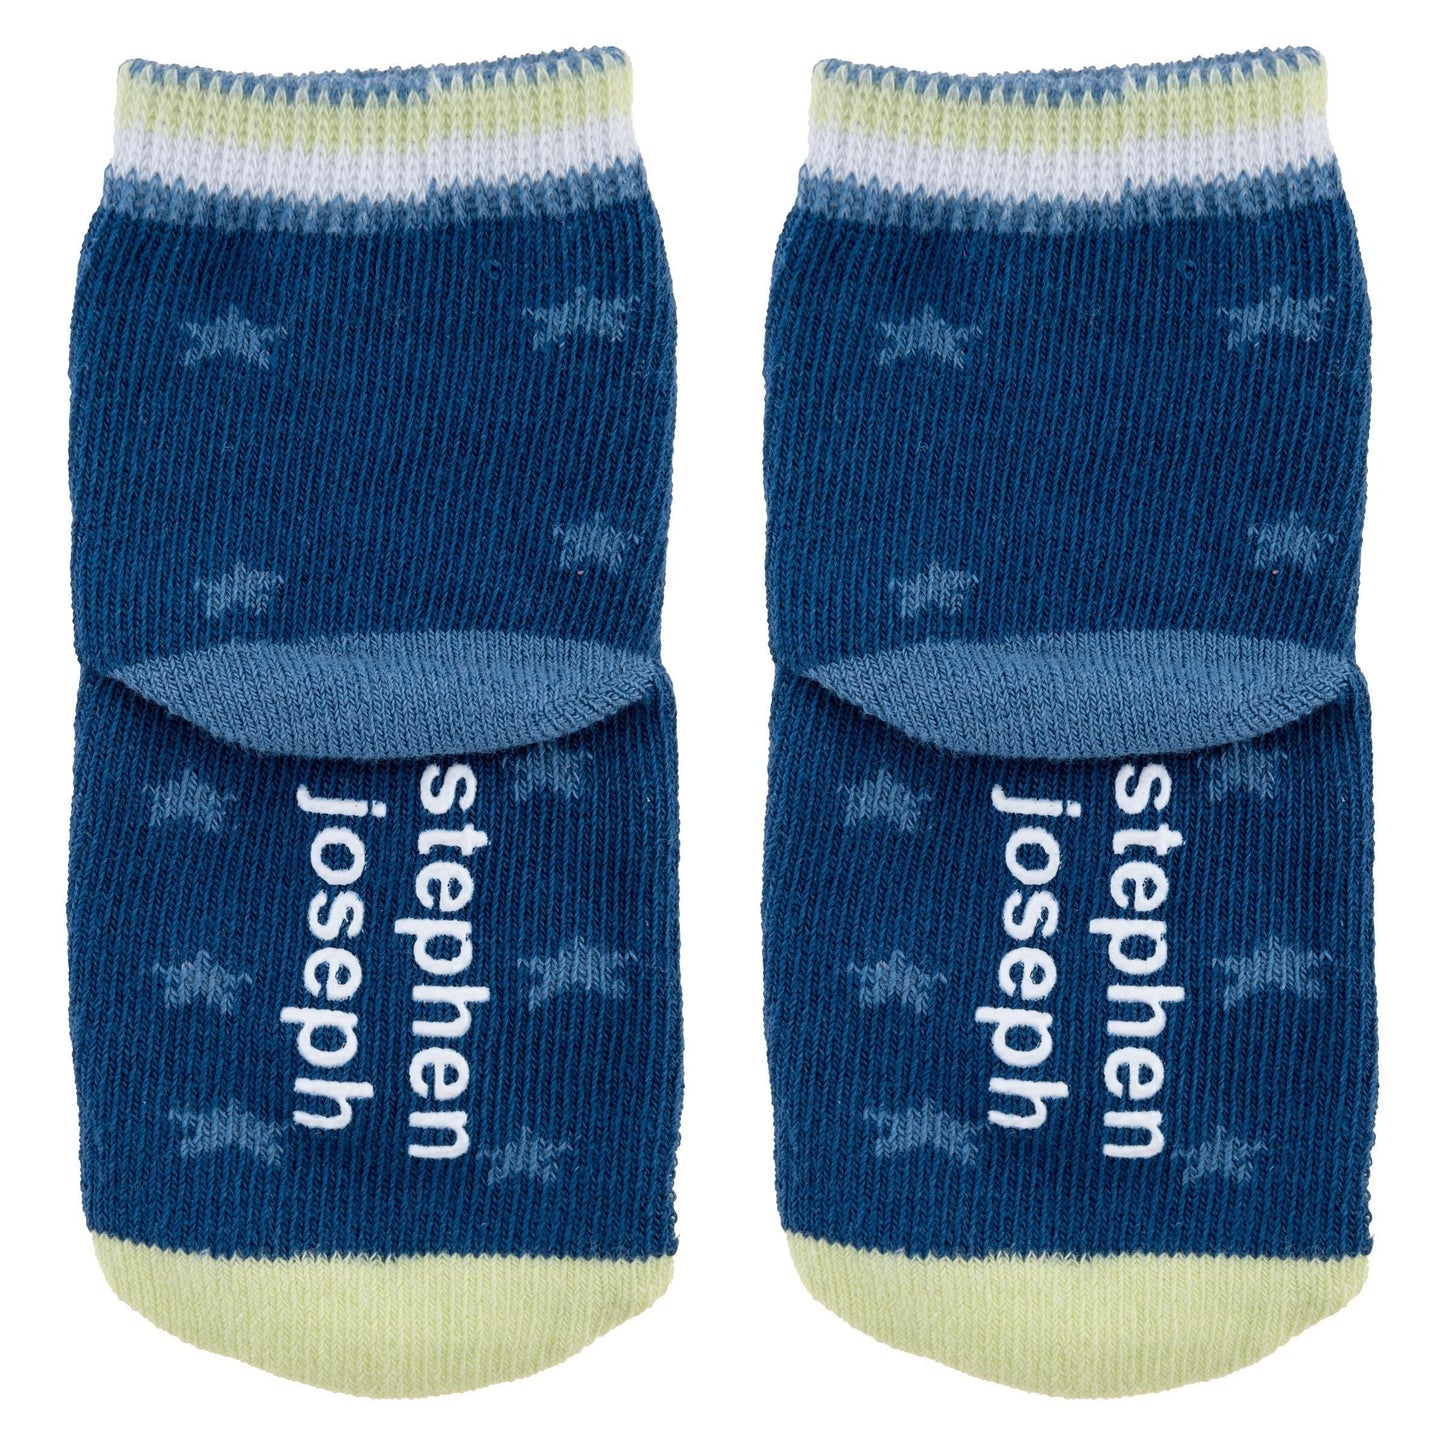 Stephen Joseph Baby Socks 3 Pack